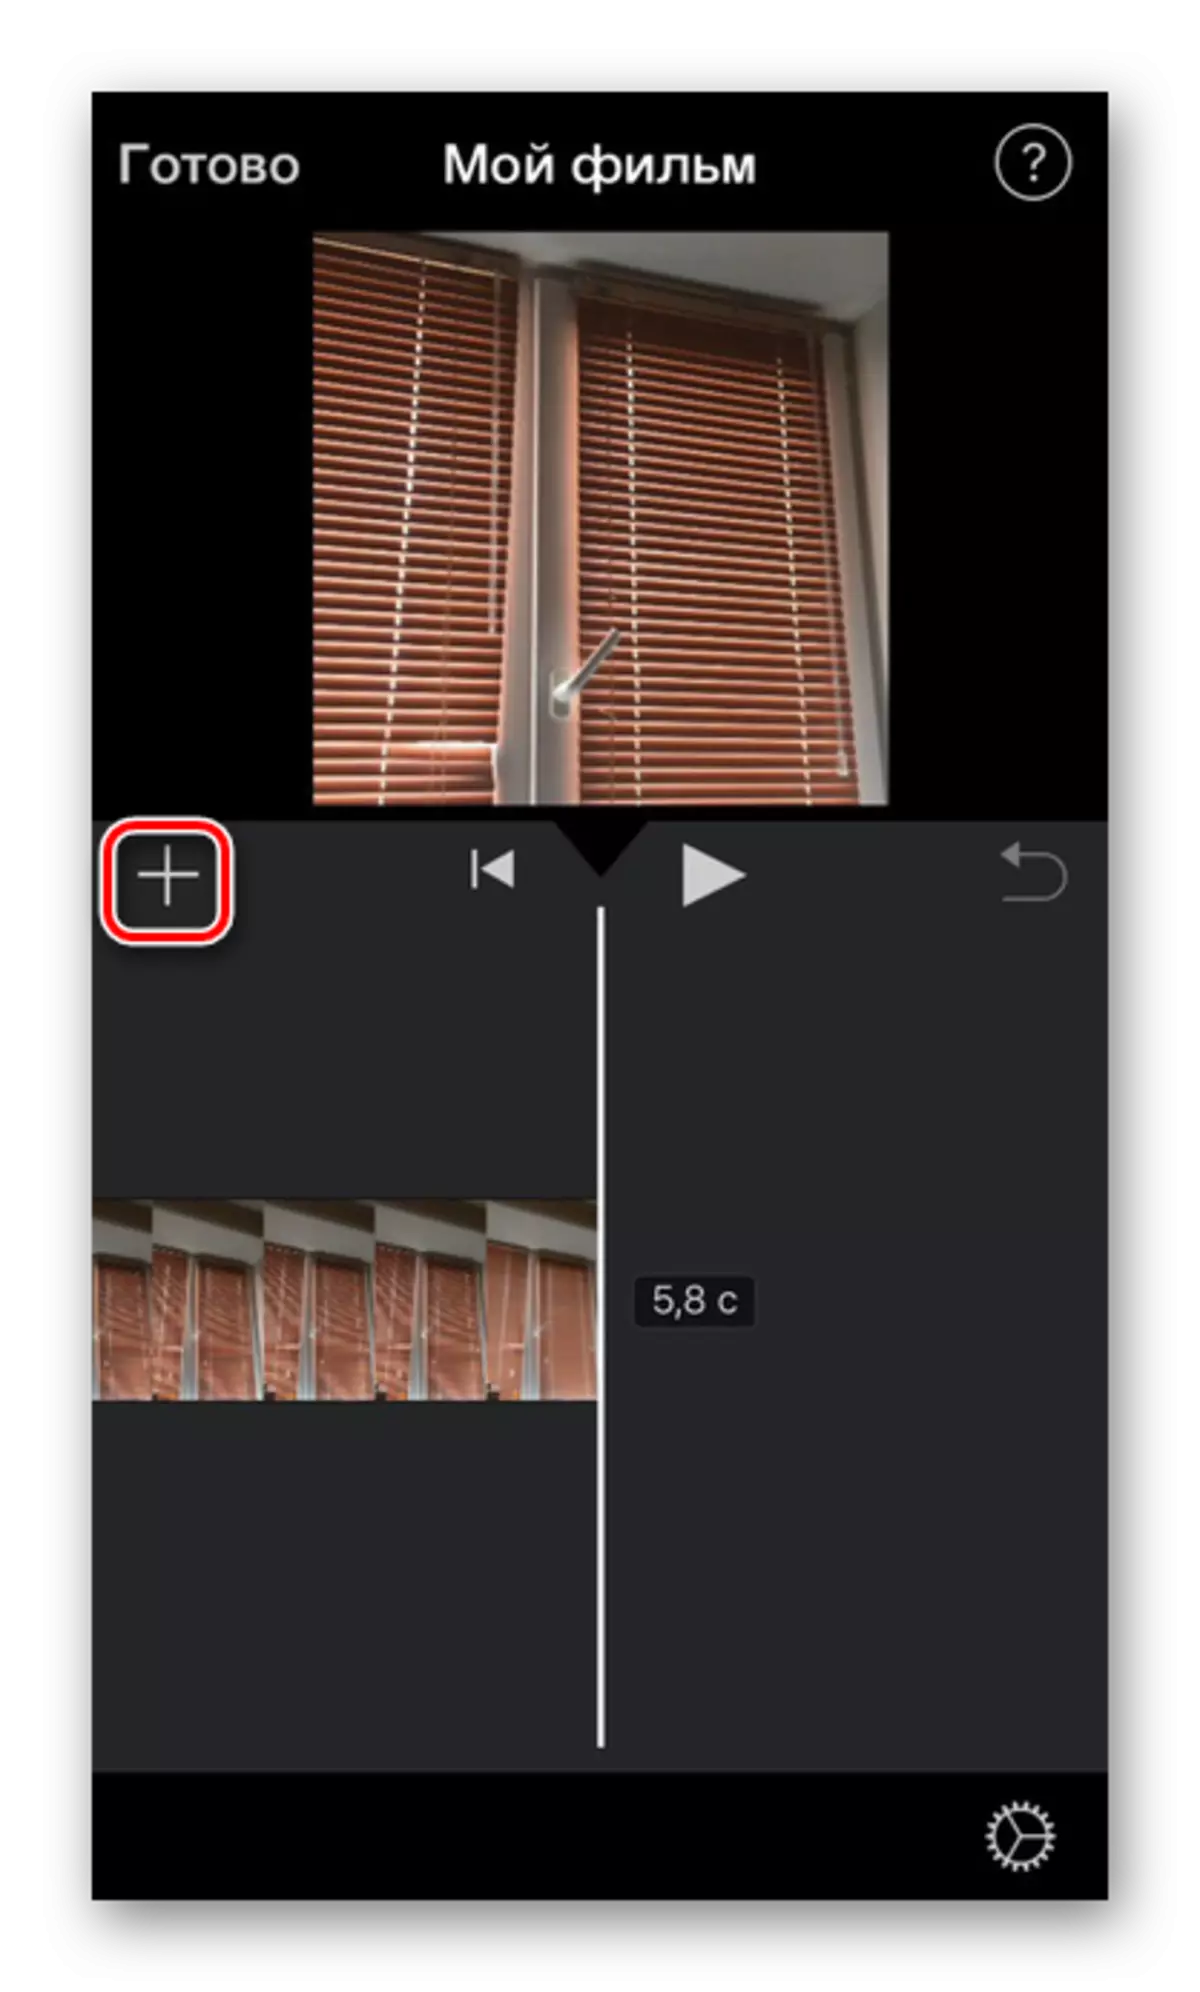 iPhone에서 iMovie 응용 프로그램에 비디오 오디오를 추가하는 프로세스